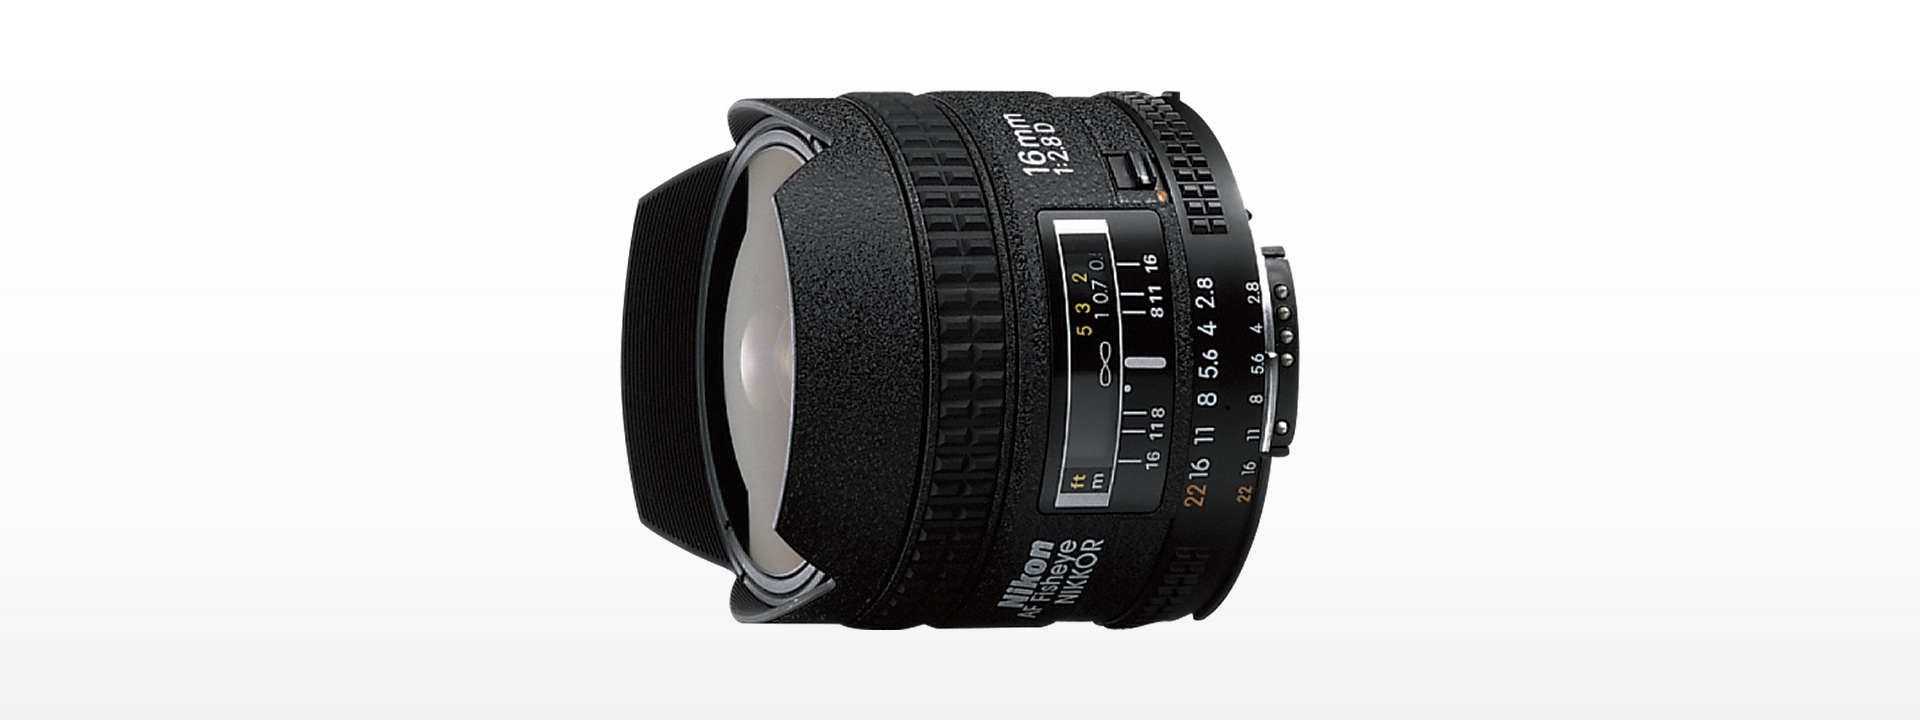 カメラ レンズ(単焦点) AI AF Fisheye-Nikkor 16mm f/2.8D - 概要 | NIKKORレンズ | ニコン 